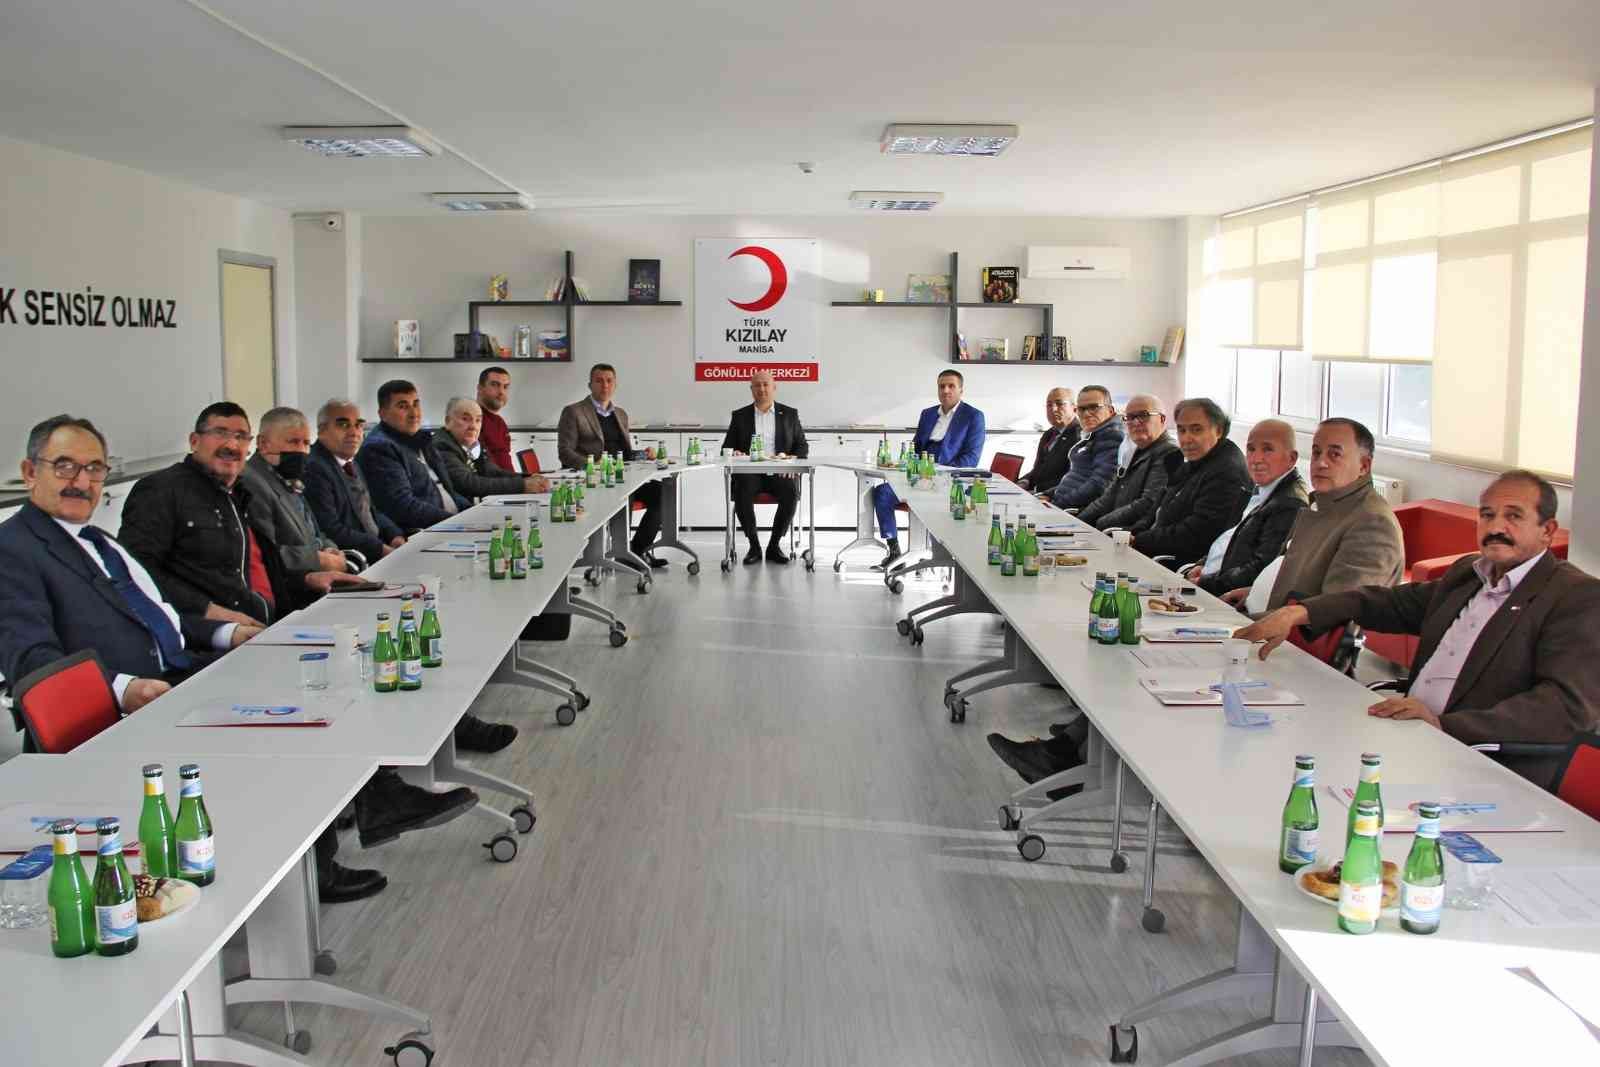 Türk Kızılay Manisa Şubesi’nde il koordinasyon kurulu toplantısı yapıldı #manisa